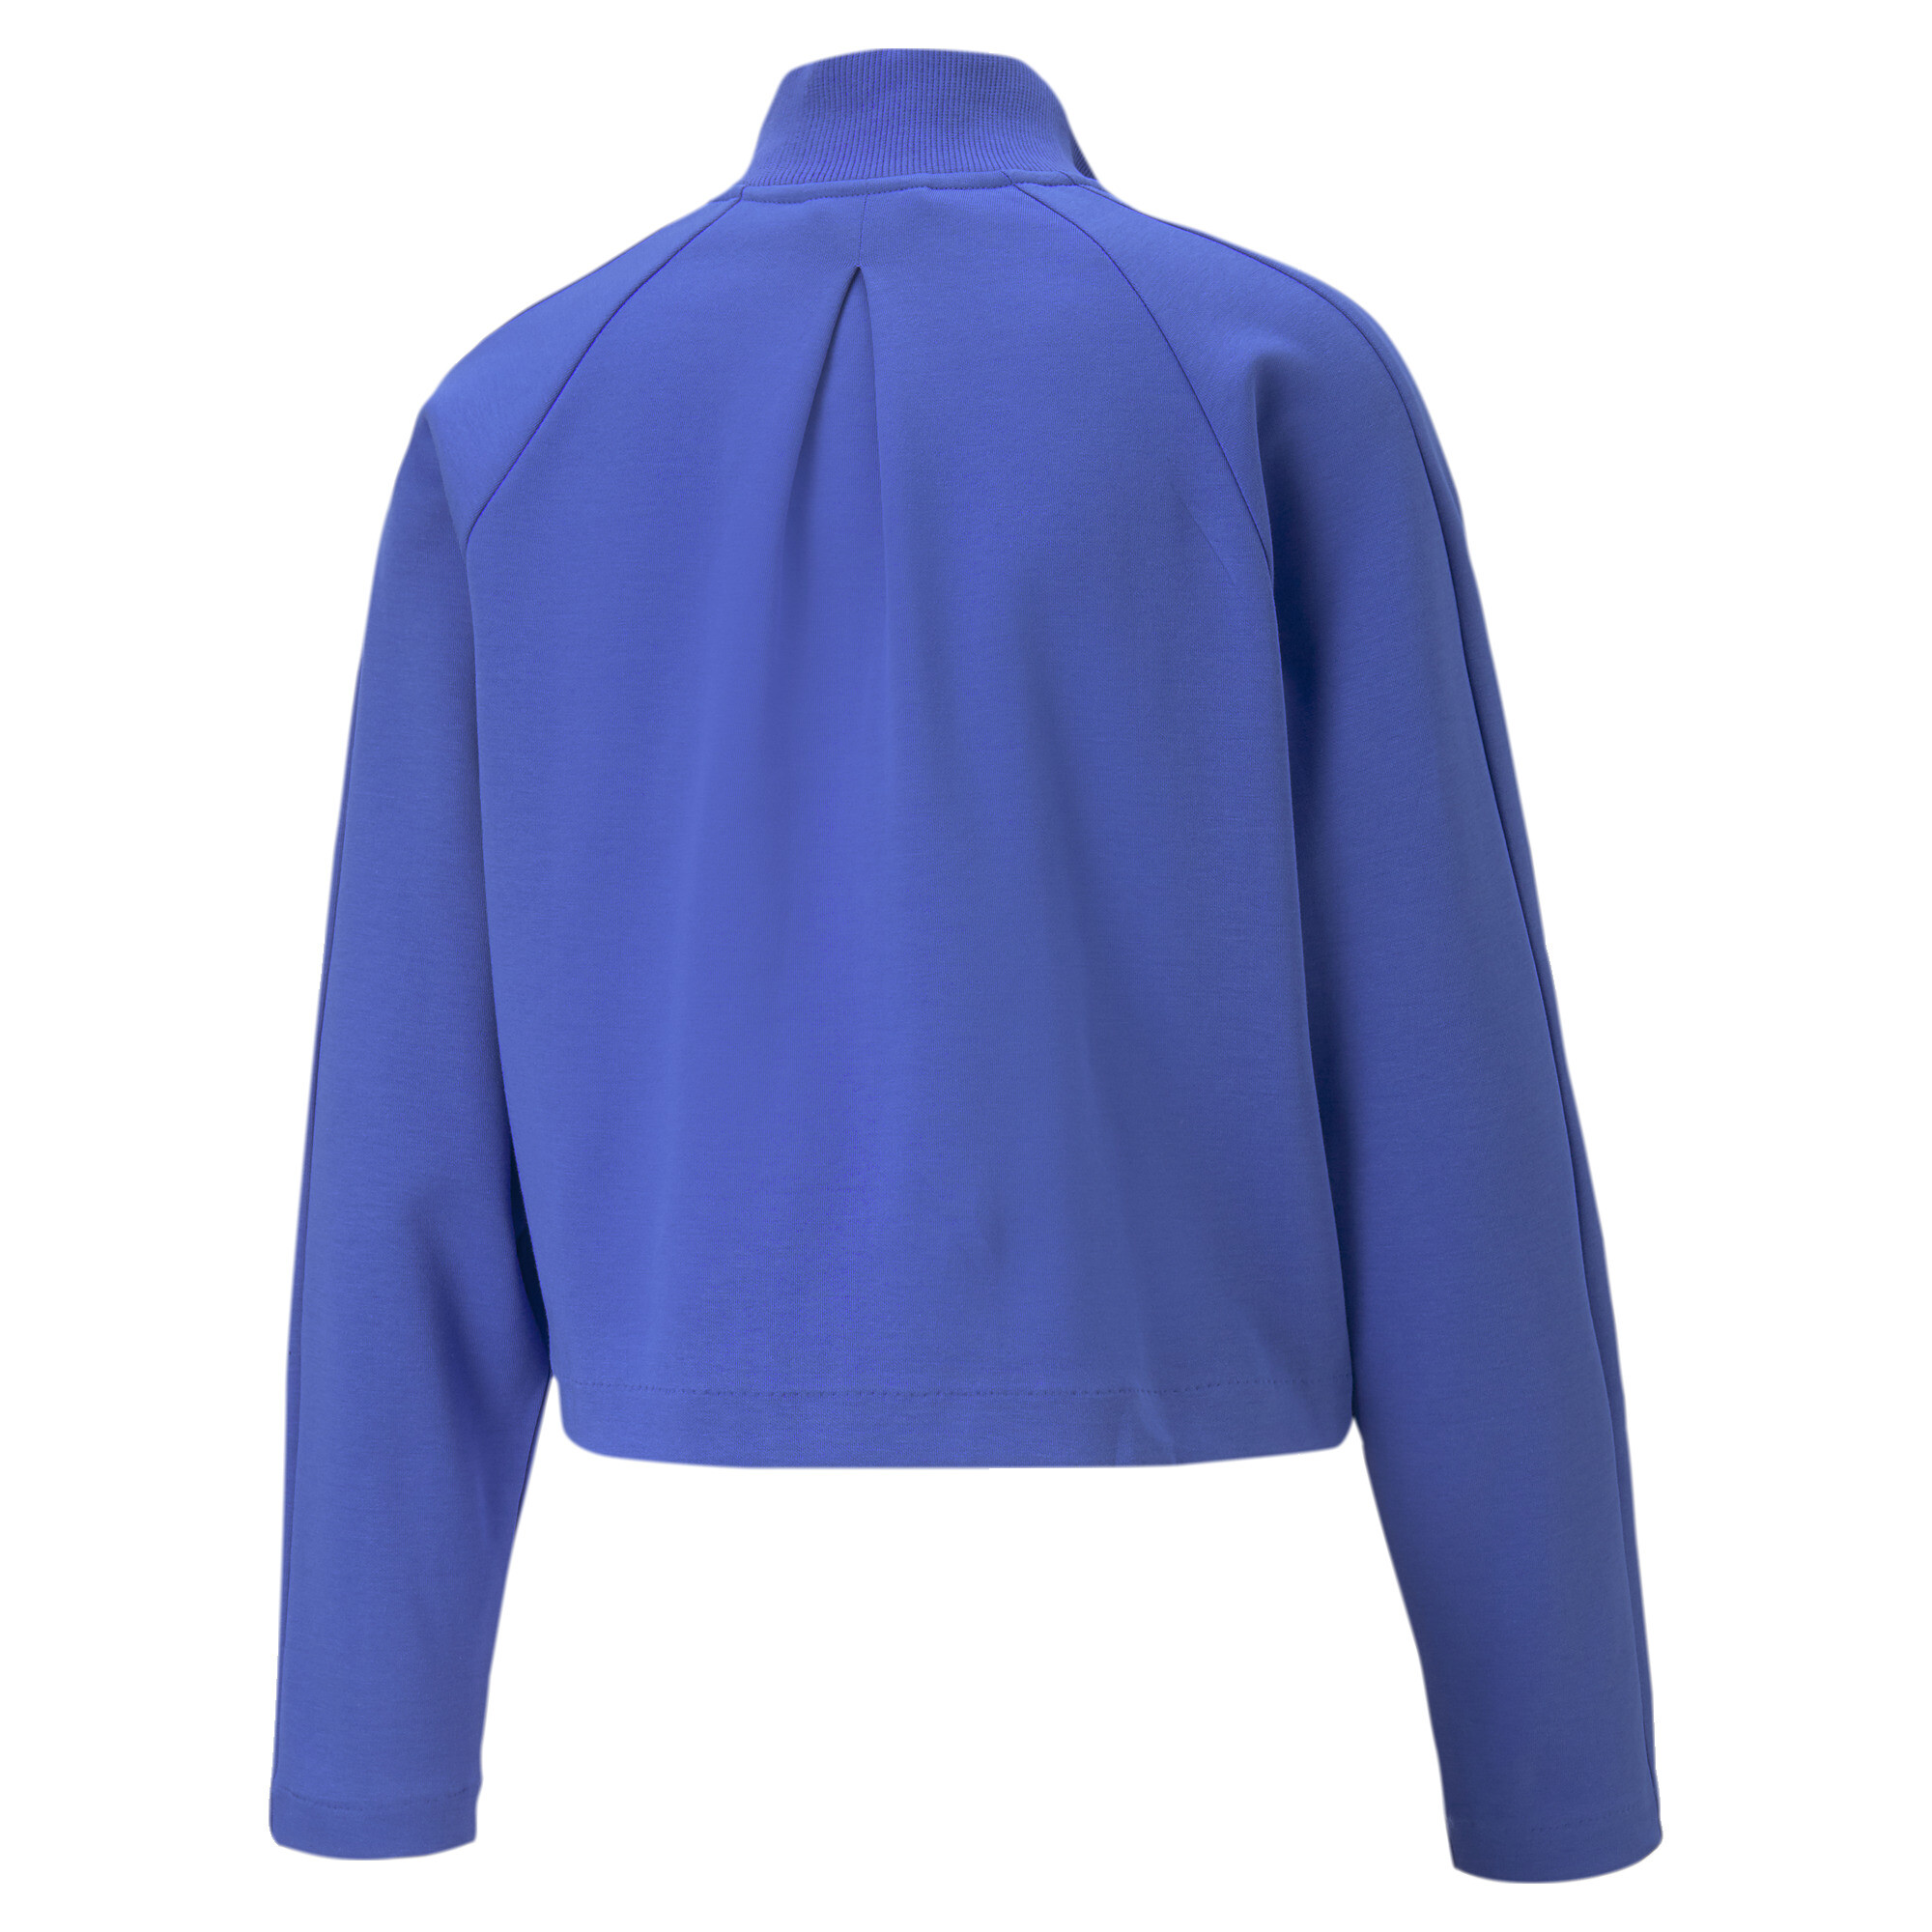 Women's PUMA T7 Track Jacket Women In Blue, Size Small